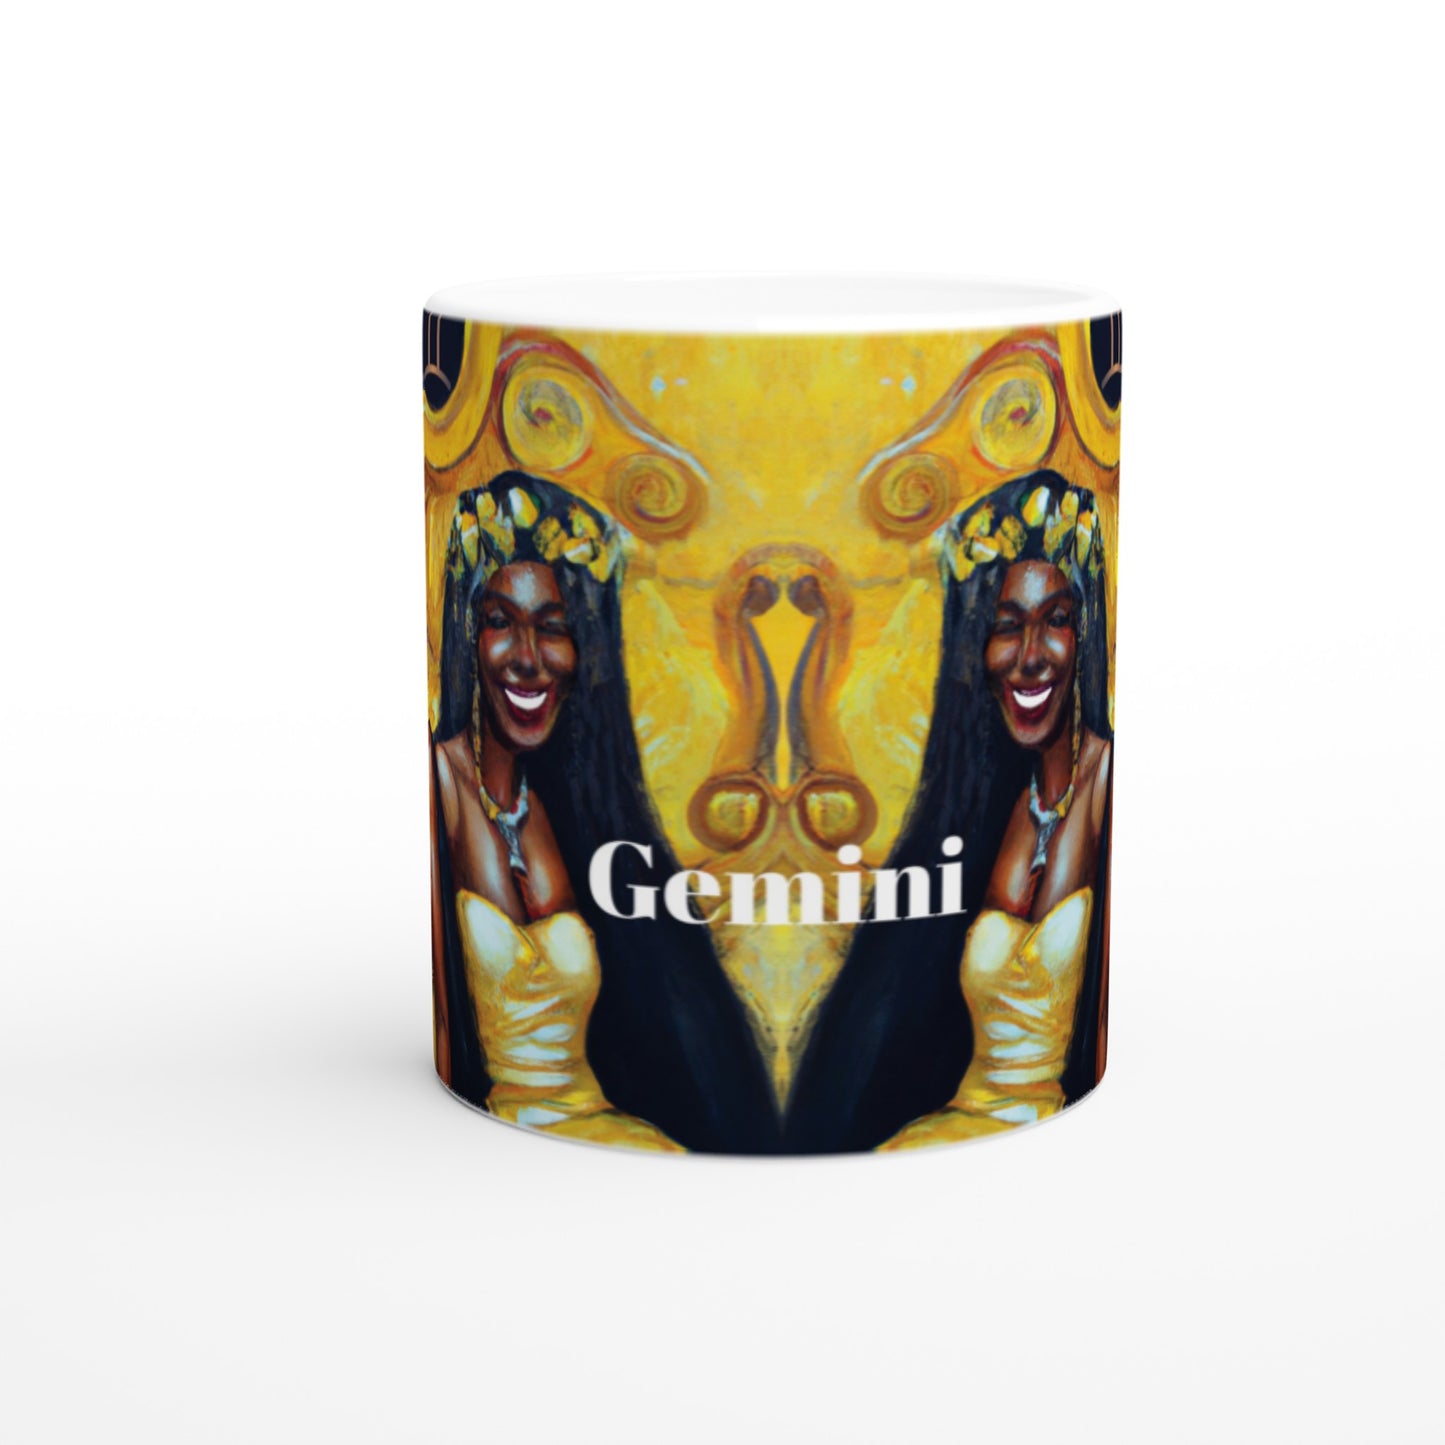 Twin & Twin Gemini Ceramic Mug -11oz